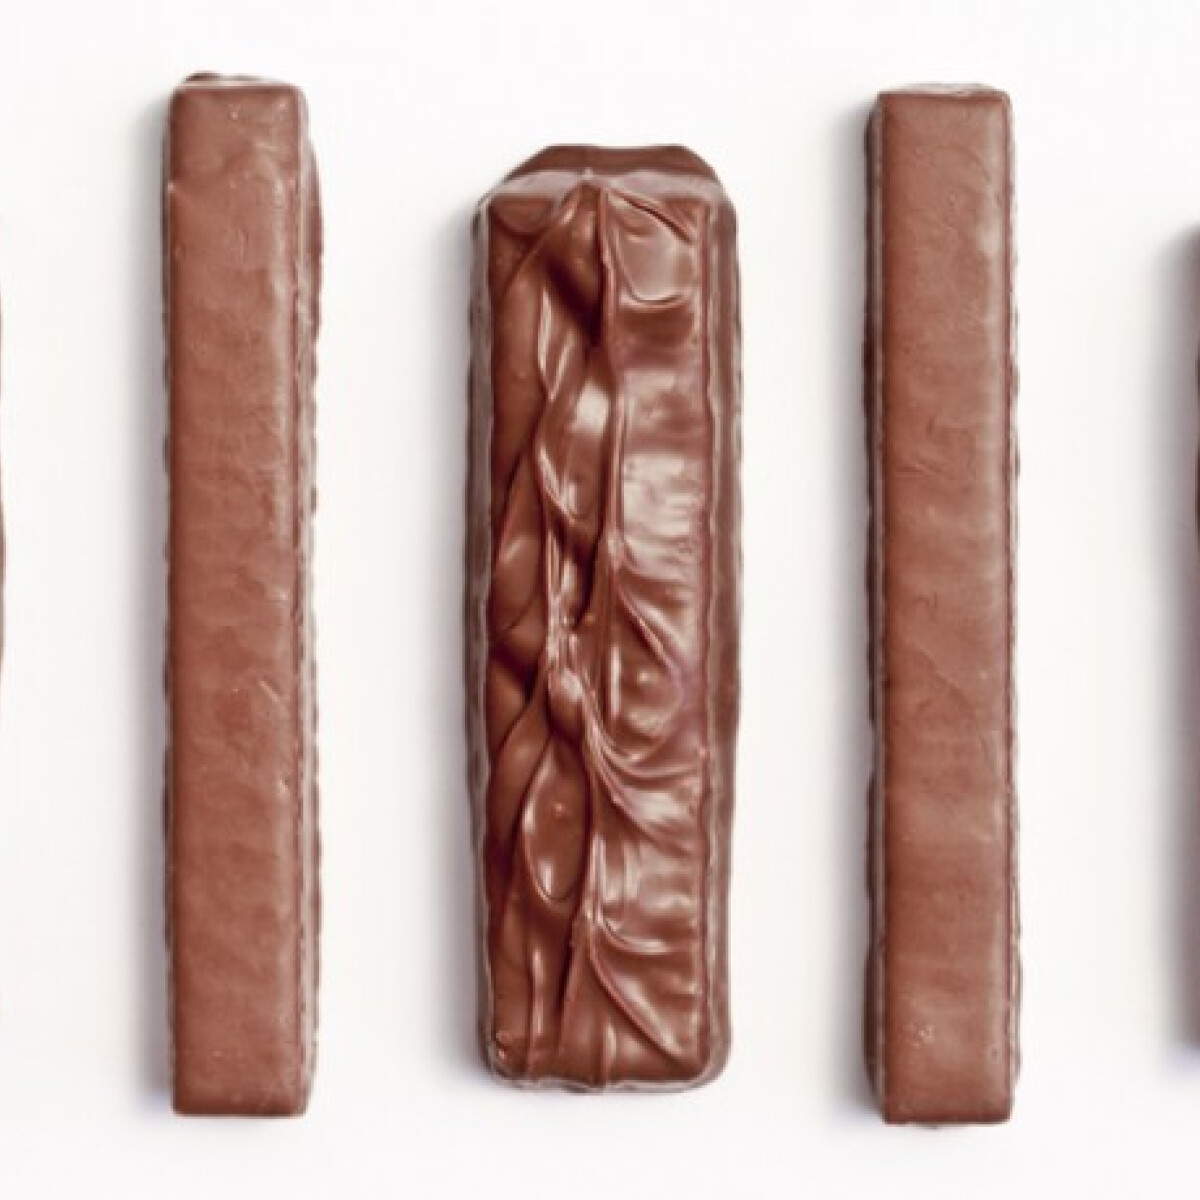 Kiderült, melyik a legjobb csokoládészelet - Szavazz, szerinted melyik a legfinomabb!